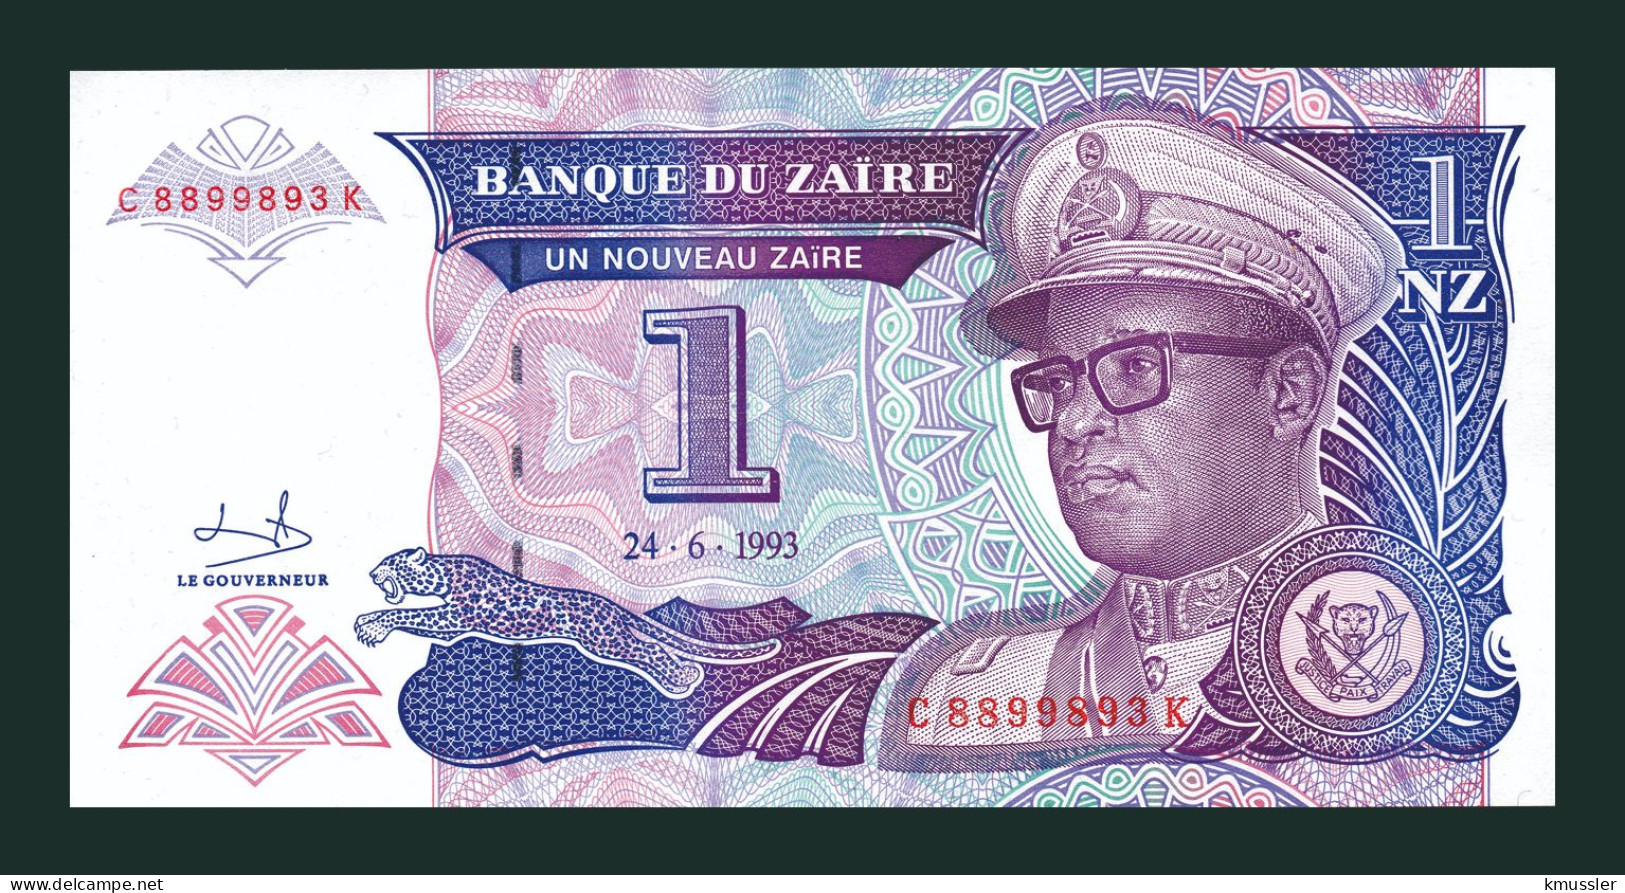 # # # Banknote Zaire 1 Nouveau Zaire 1992 (P-52) UNC # # # - Zaïre